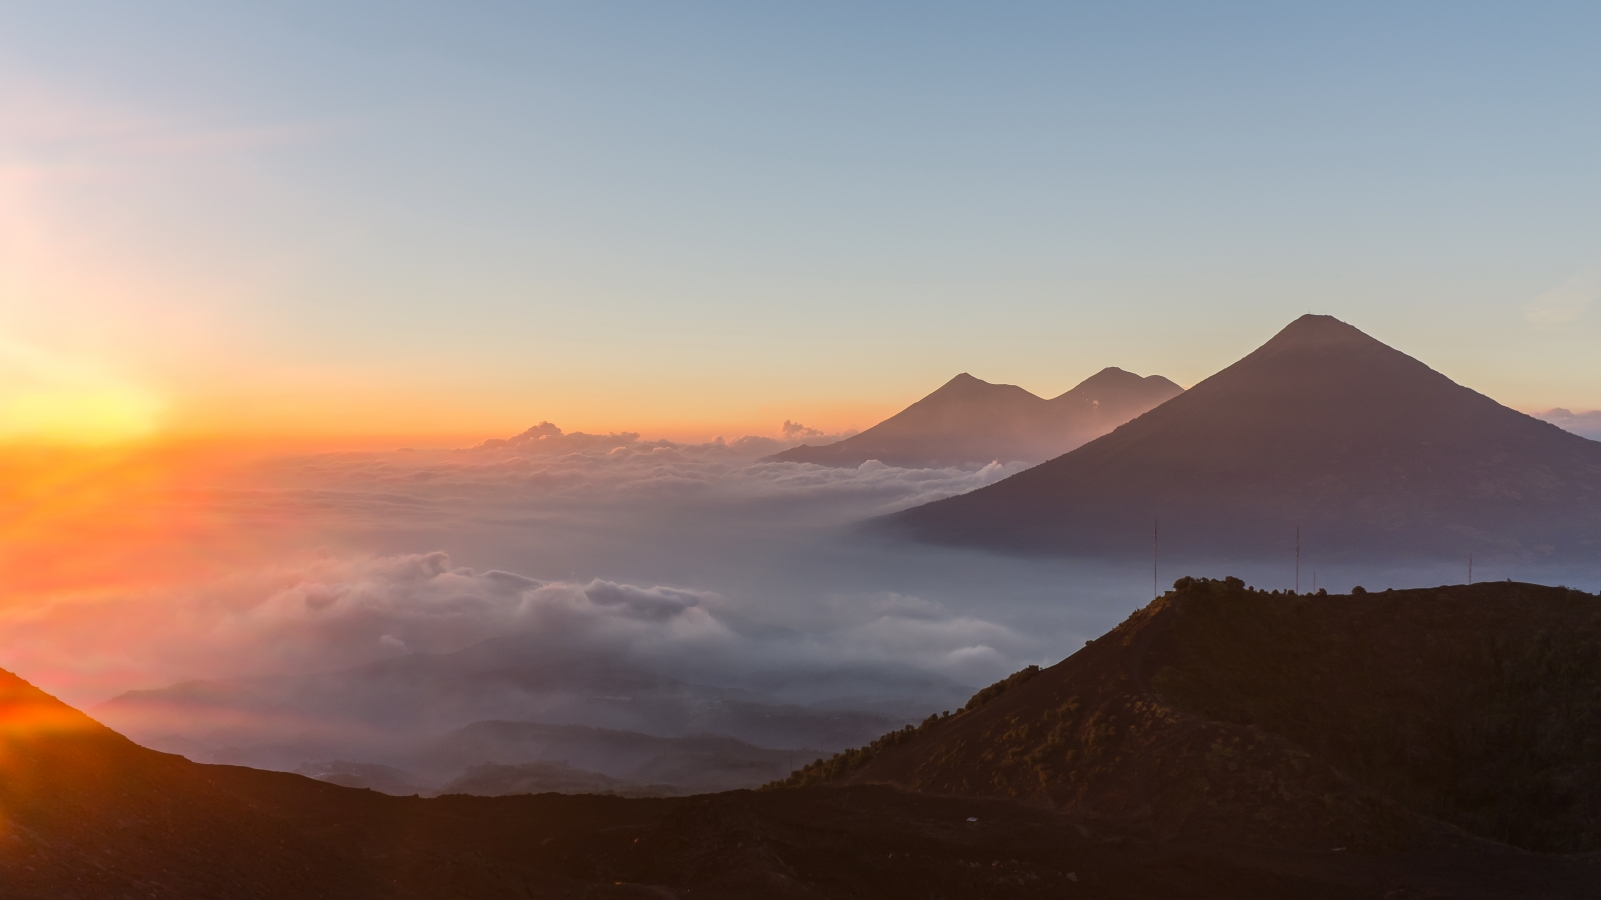 Volcan Pacaya : View from Volcano Pacaya - ©Flickr user Christopher Crouzet...